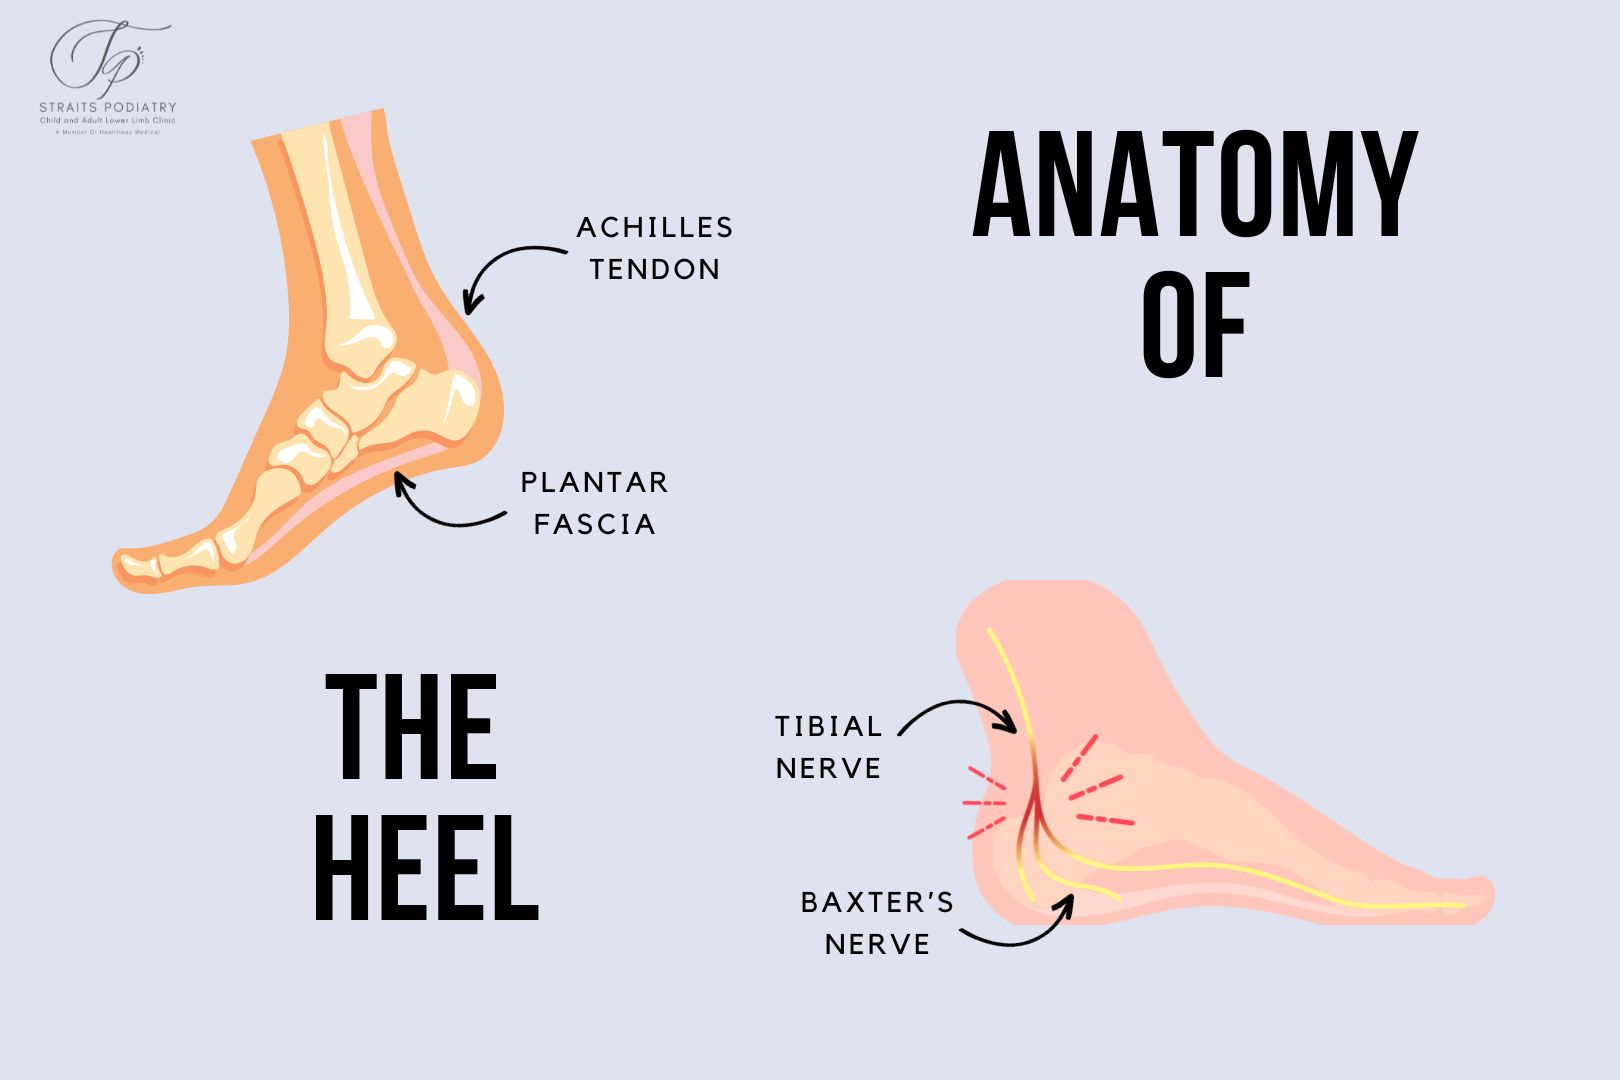 海峡足病诊疗中心的足跟解剖图。信息图表显示了足部的跟腱、足底筋膜、胫神经和巴克斯特神经。